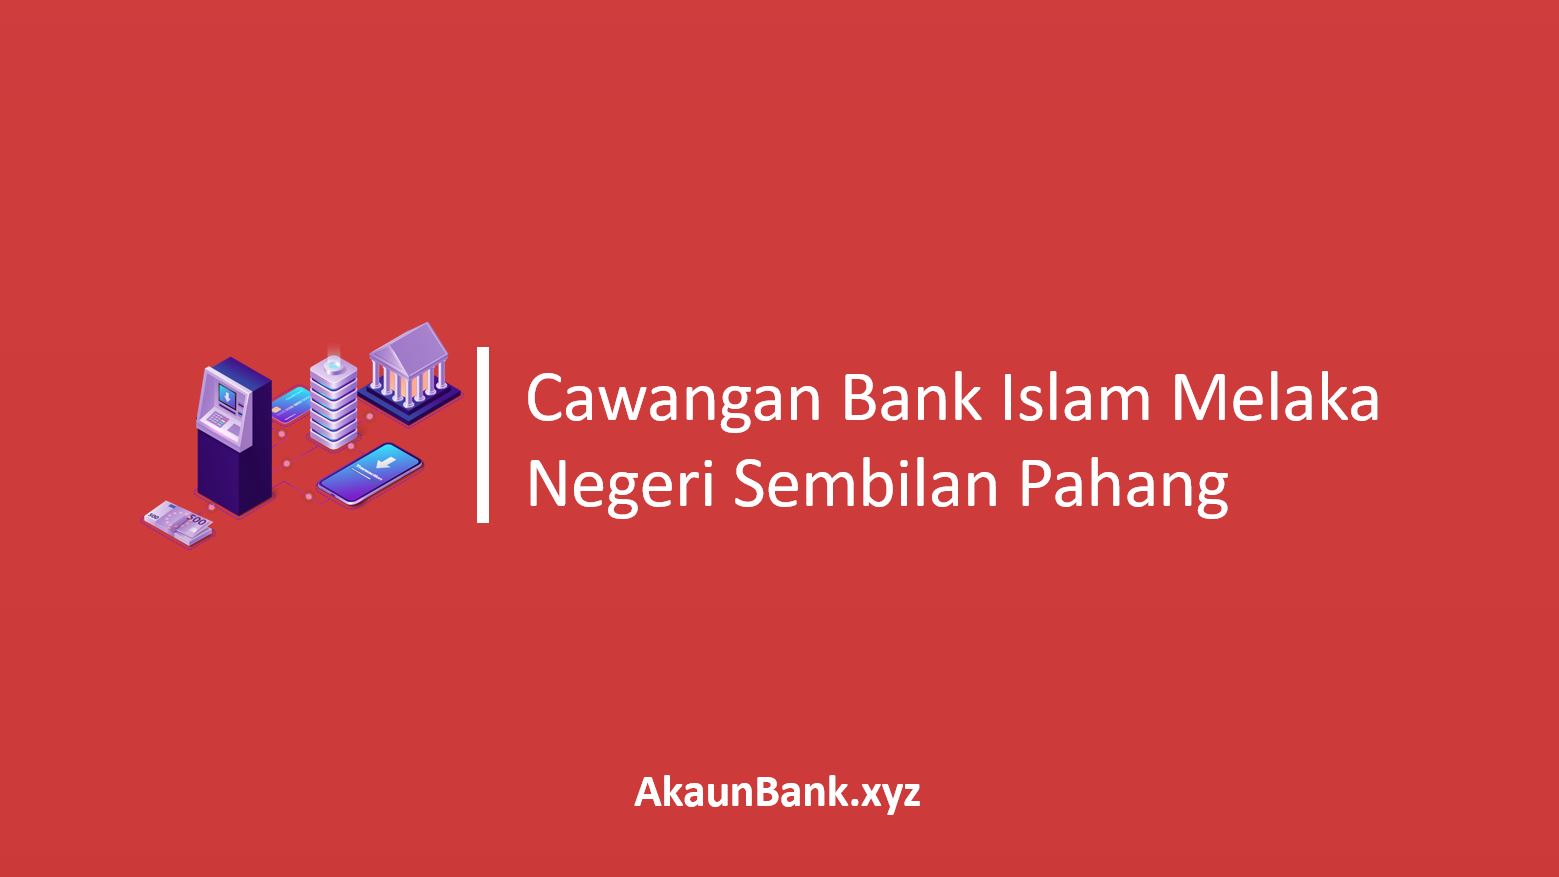 Cawangan Bank Islam Melaka Negeri Sembilan Pahang